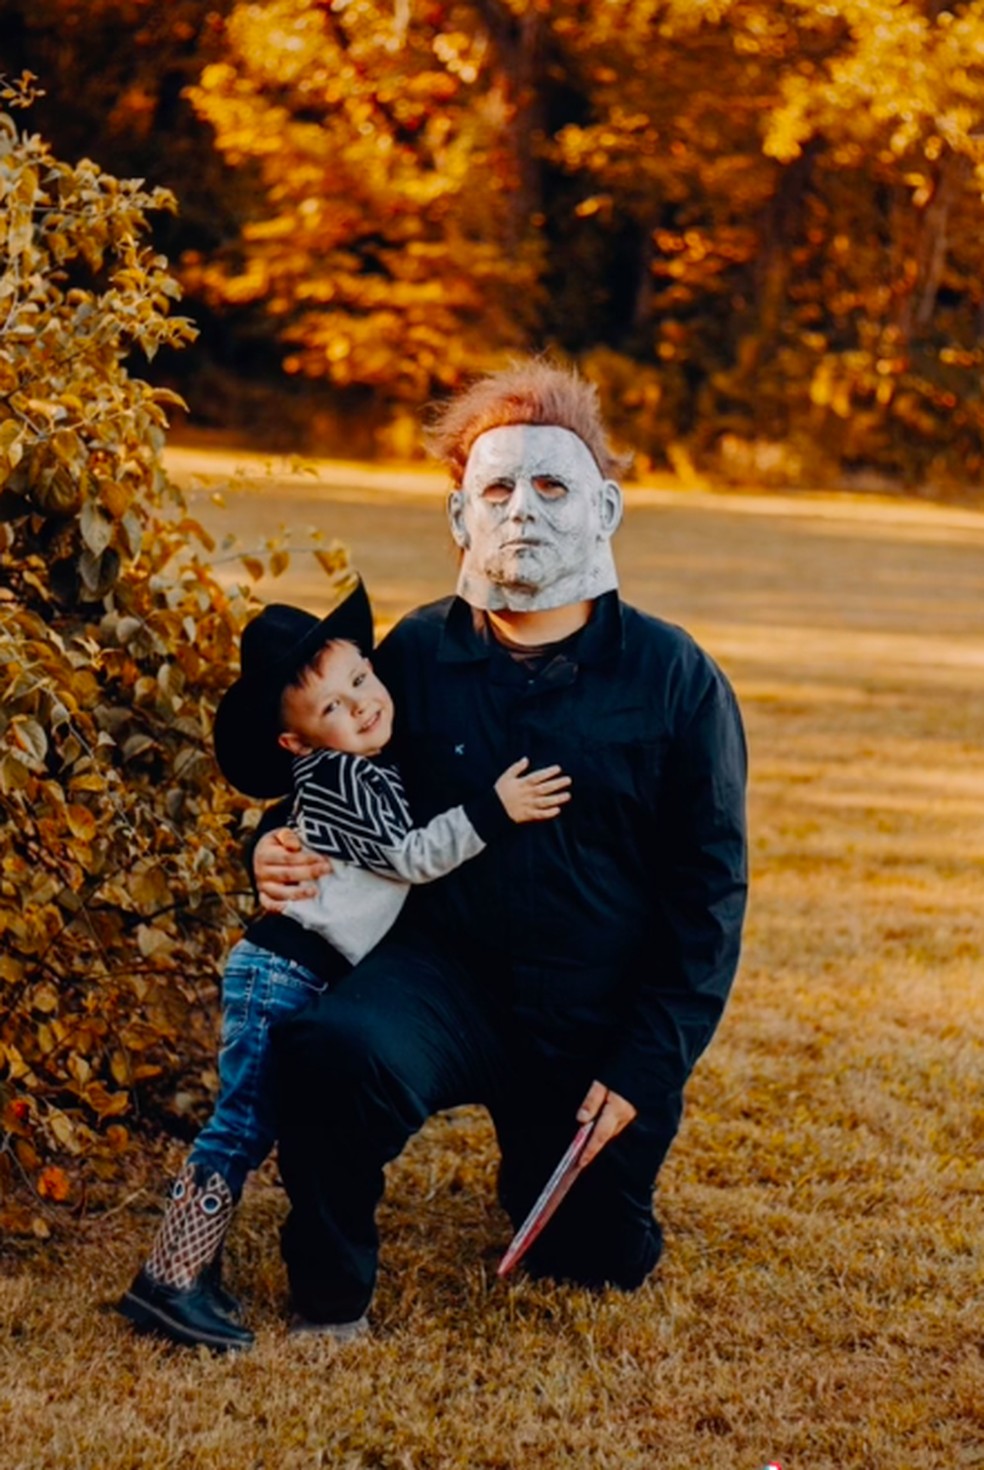 Criança não se assusta com o pai fantasiado de monstro no Halloween dos EUA — Foto: Reprodução/TikTok